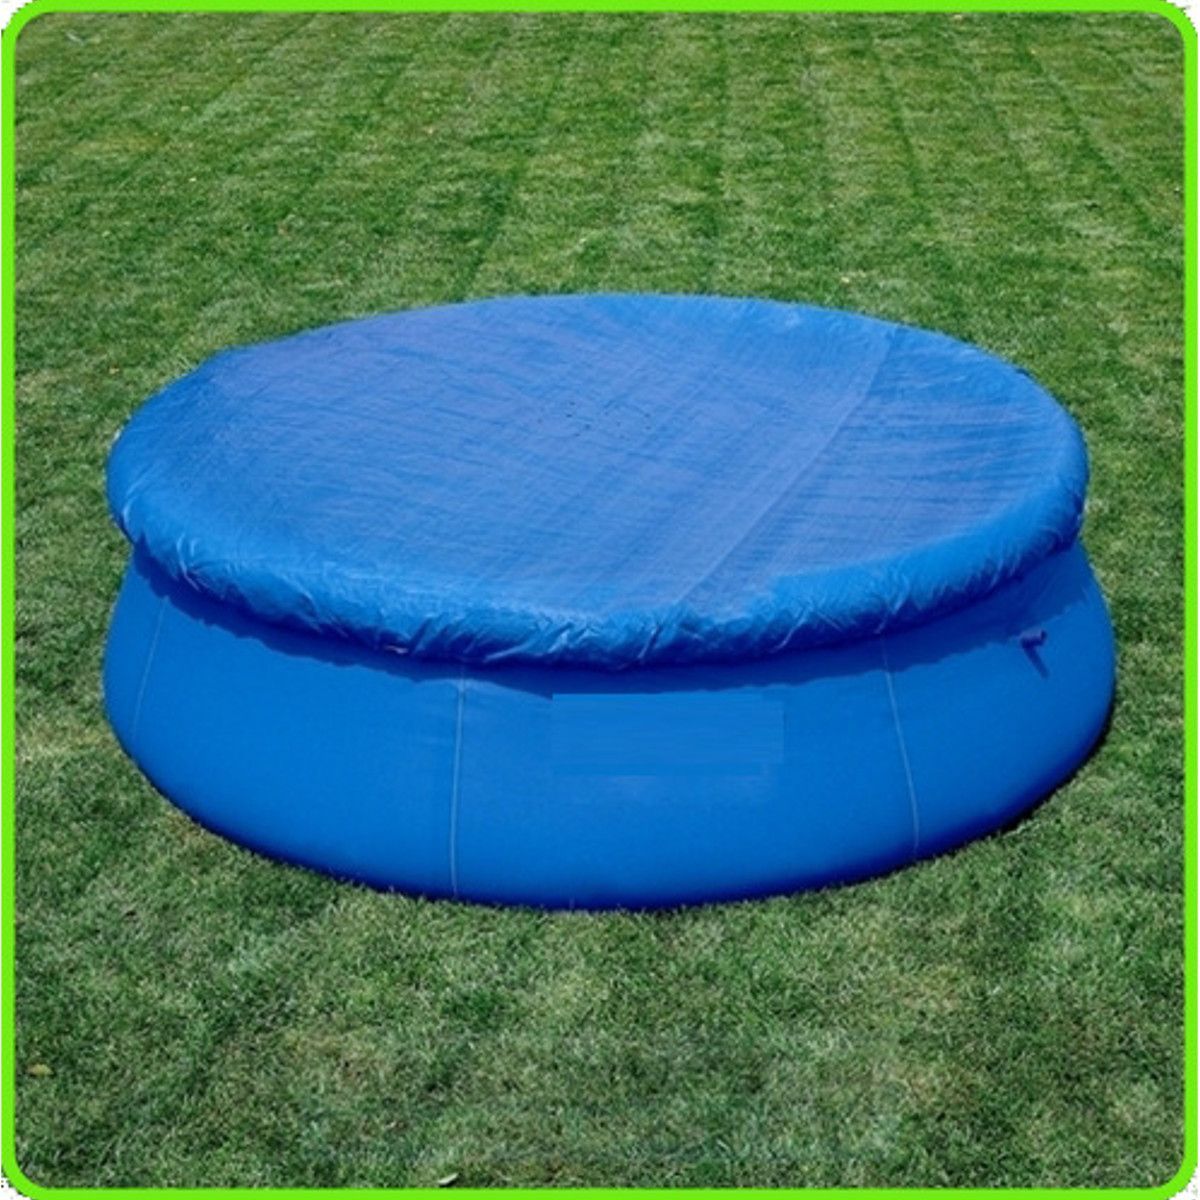 Circular-Swimming-Pool-Cover-Roller-Fit-81012-feet-Diameter-Family-Garden-Pool-Tarpaulin-Sheet-1353403